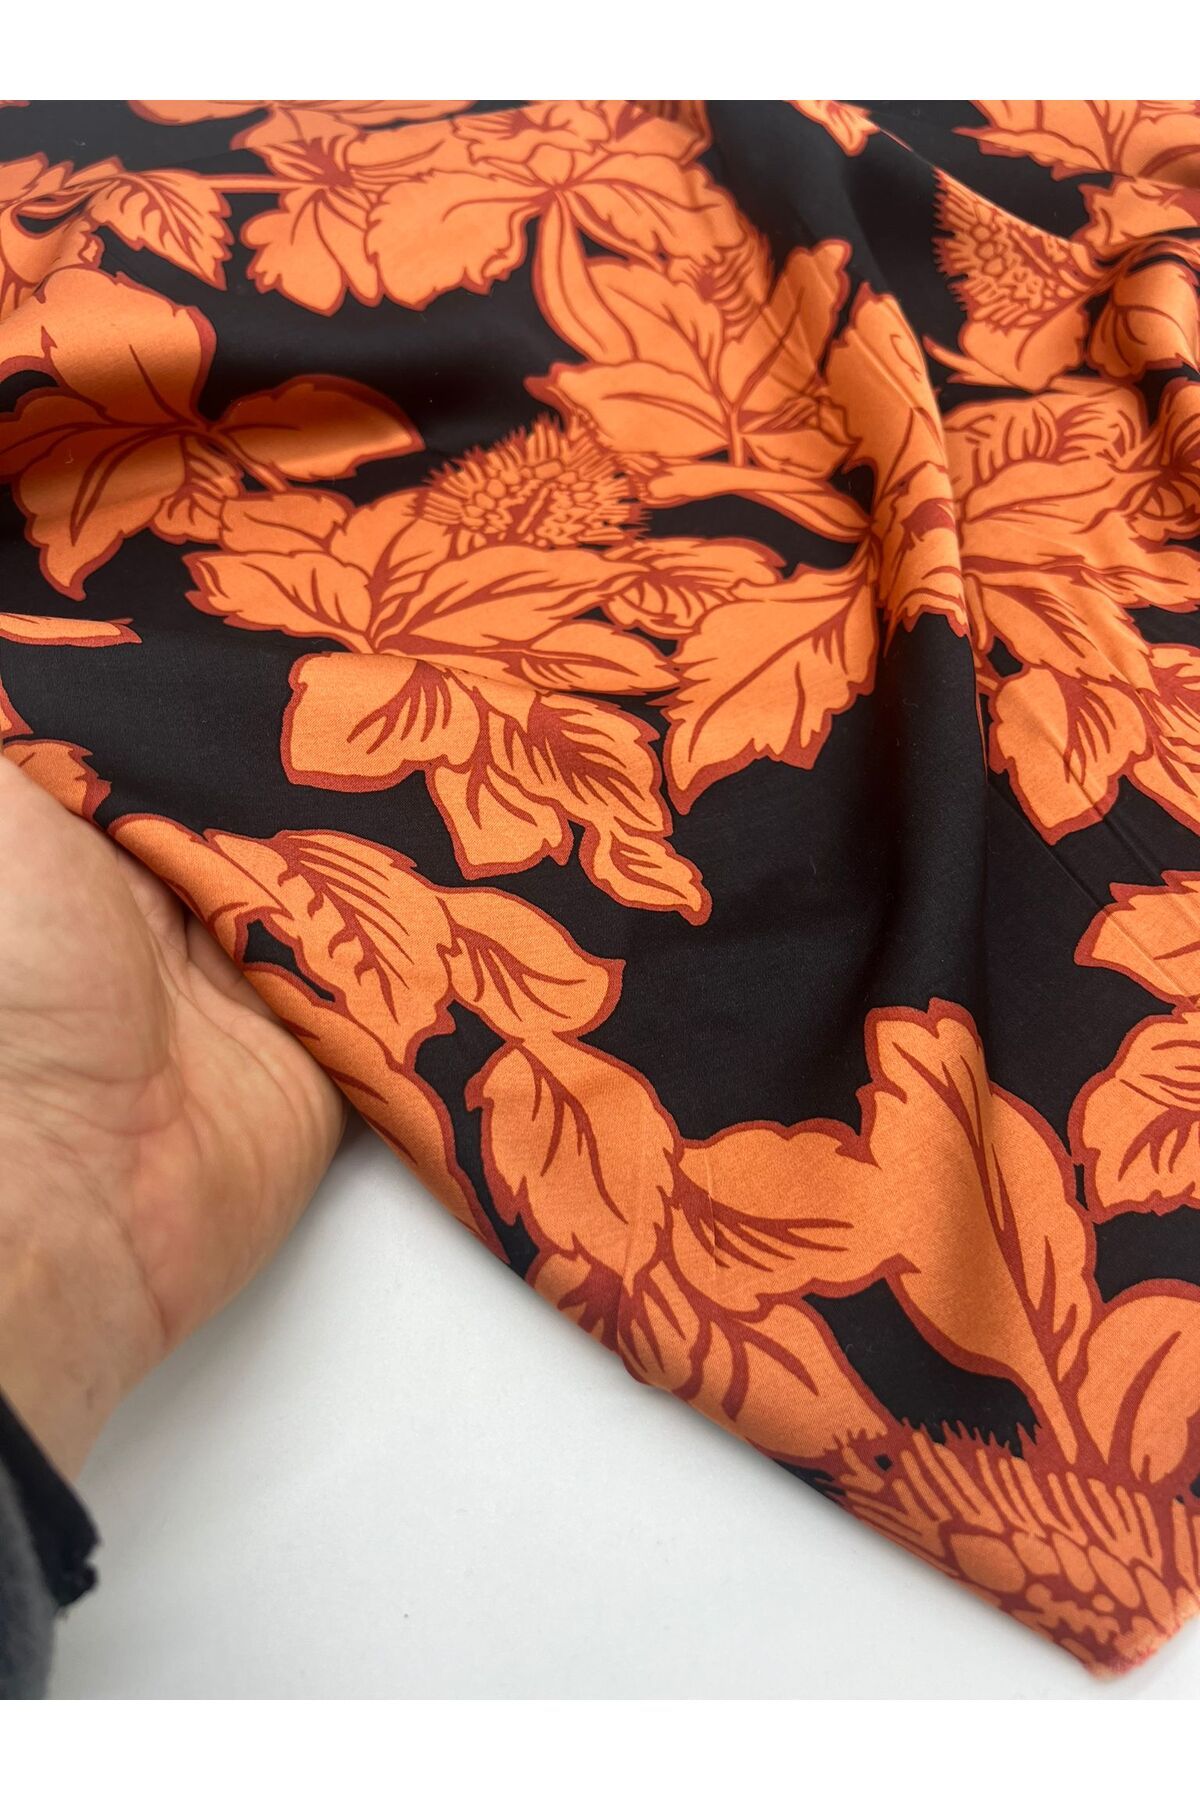 Kumaş Sevdası İpek Saten (ENİ 150cm) Polyester İçermez, Elbise Abiye Gömlek vb